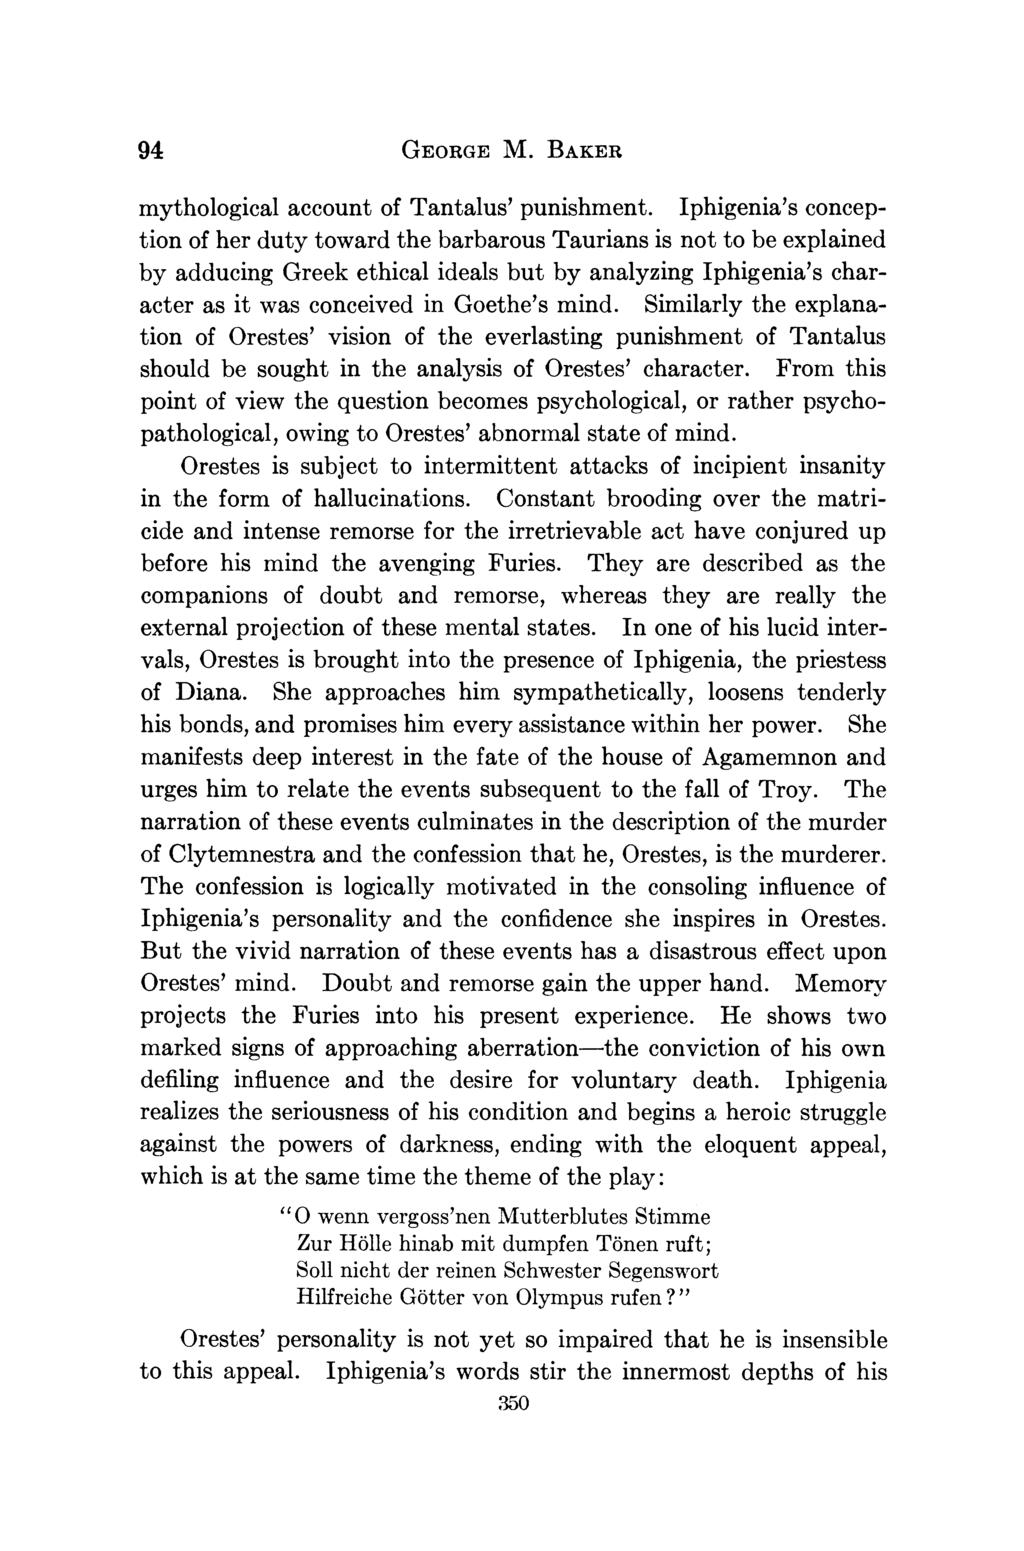 94 GEORGE M. BAKER mythological account of Tantalus' punishment.